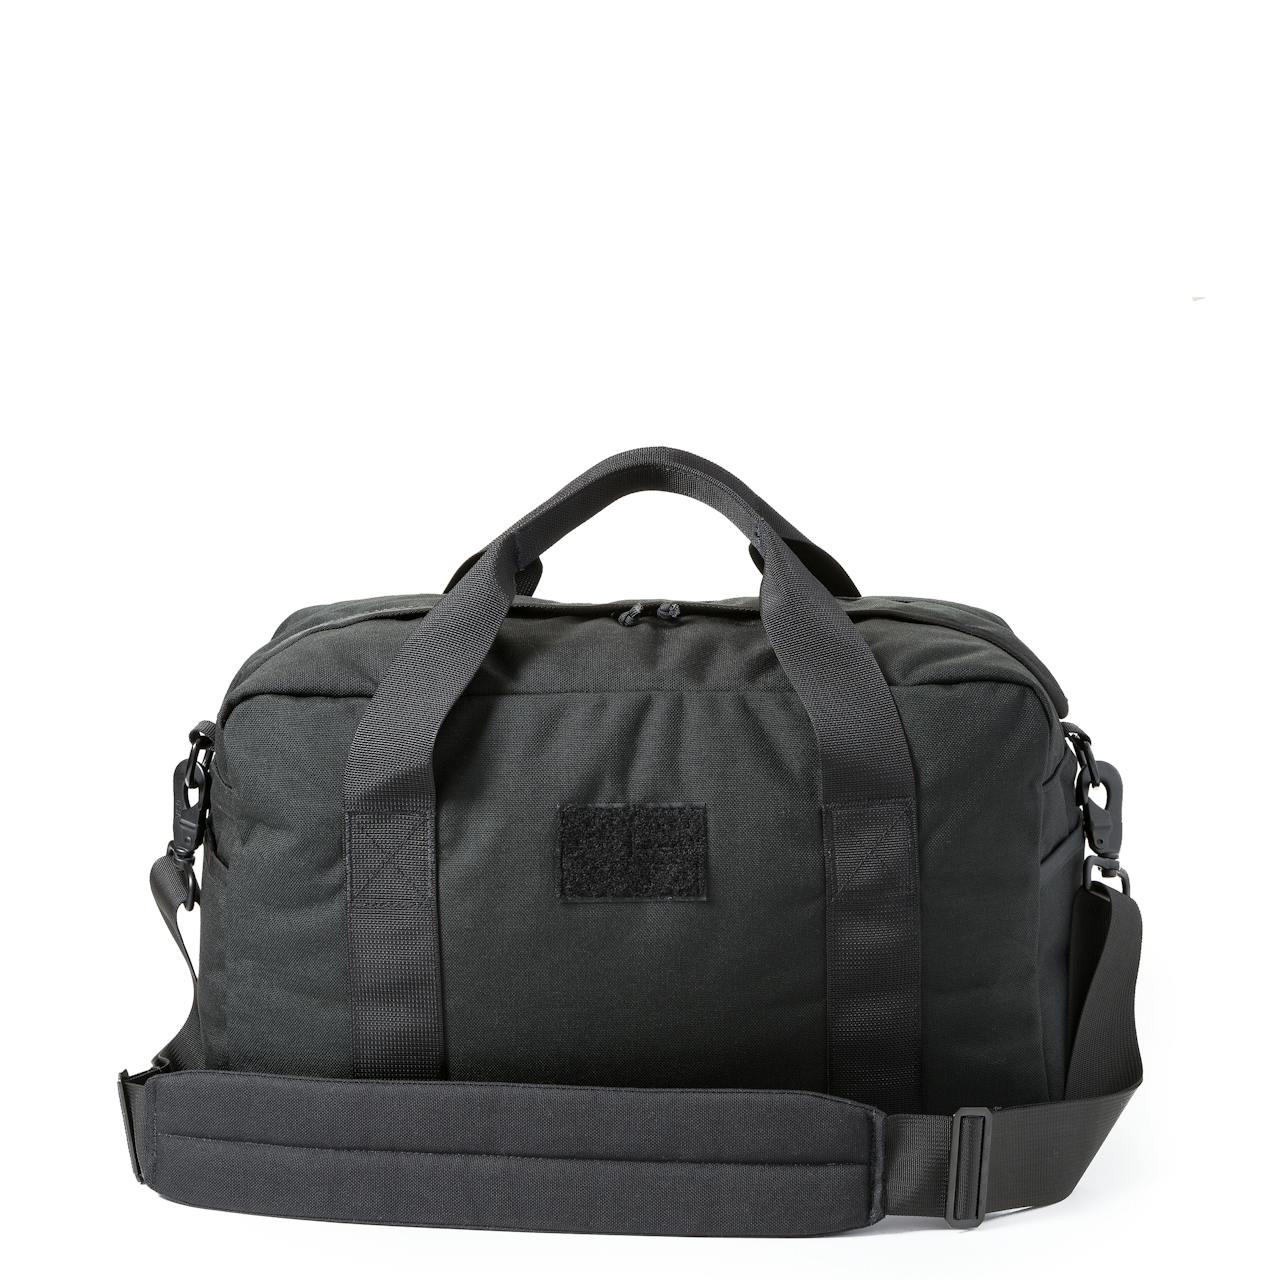 GORUCK Kit Bag + Shoulder Strap - 32L